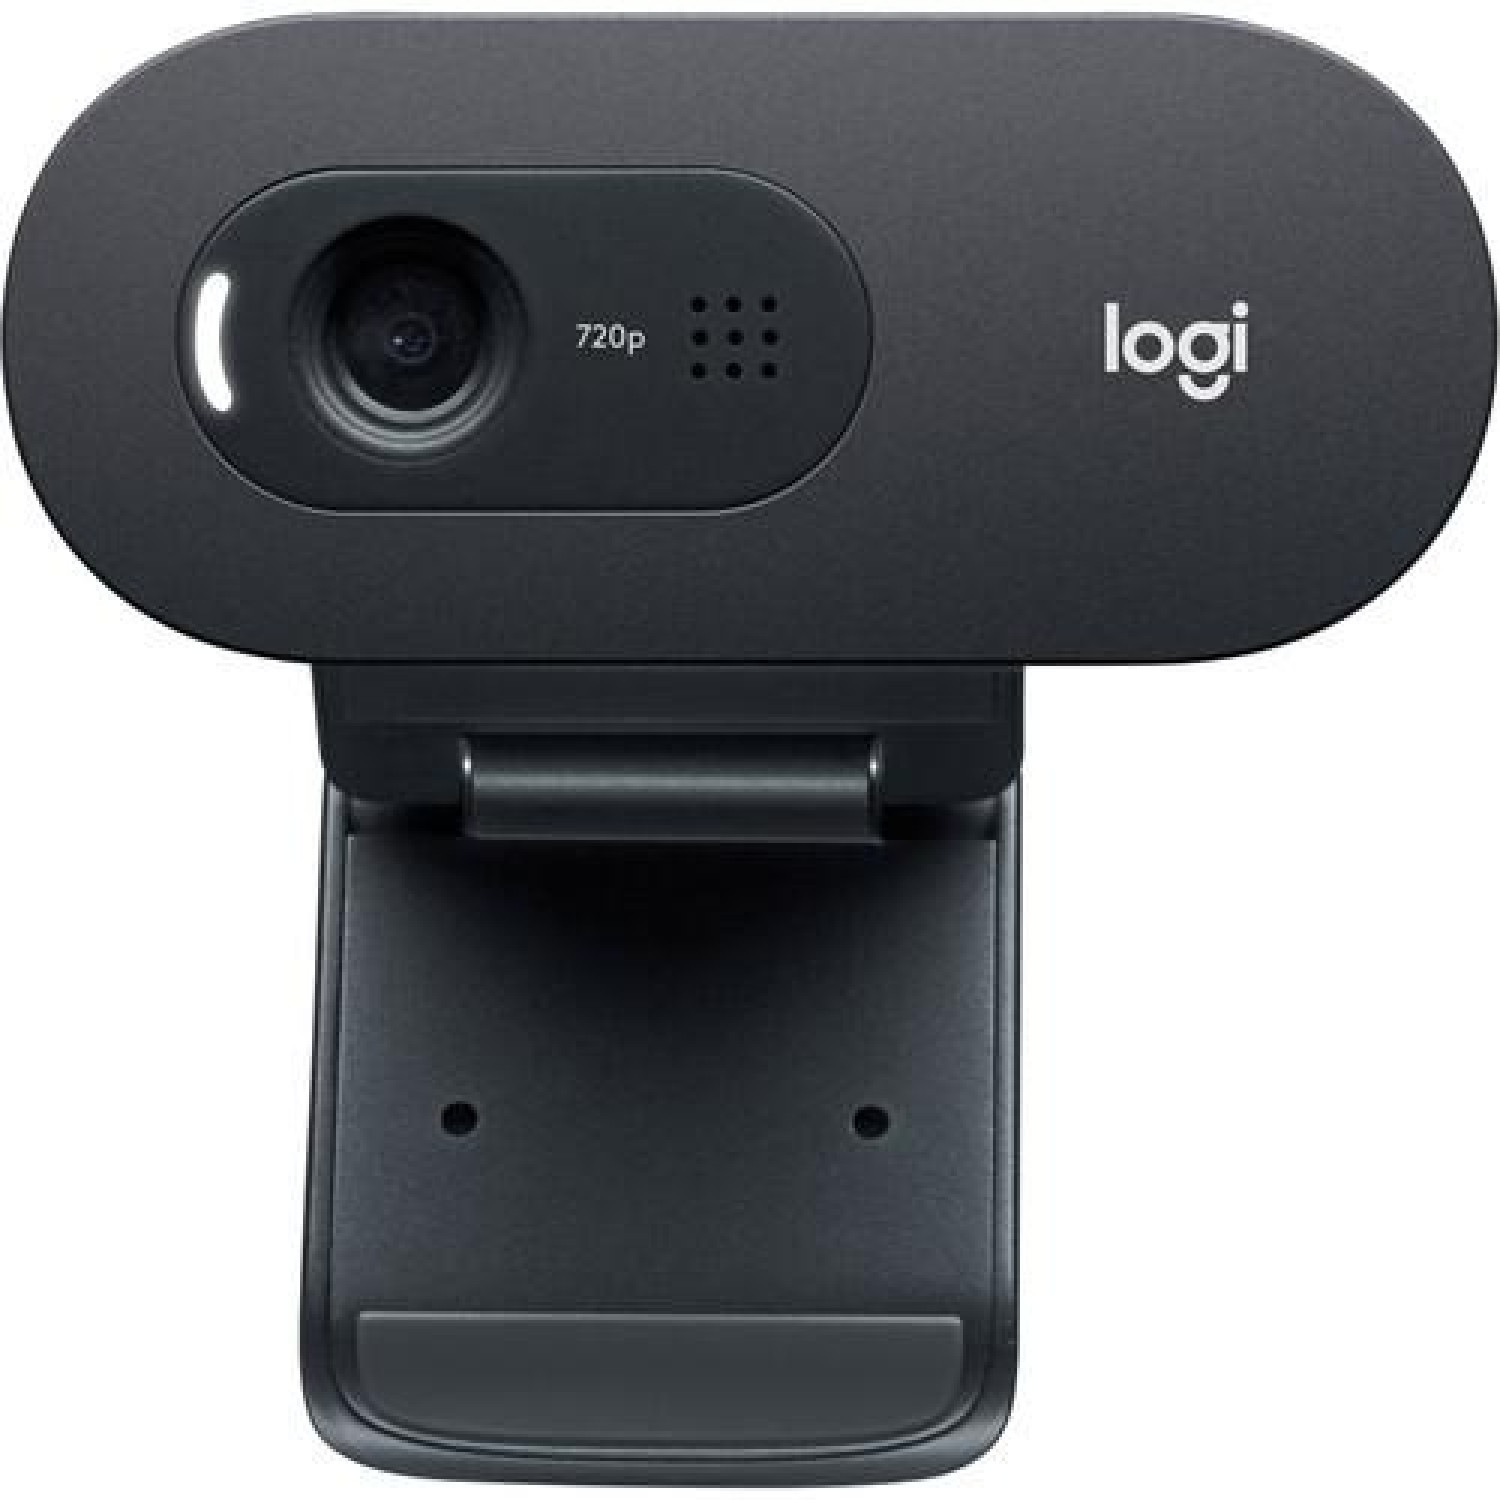 Уеб камера с микрофон LOGITECH C505, HD, USB2.0